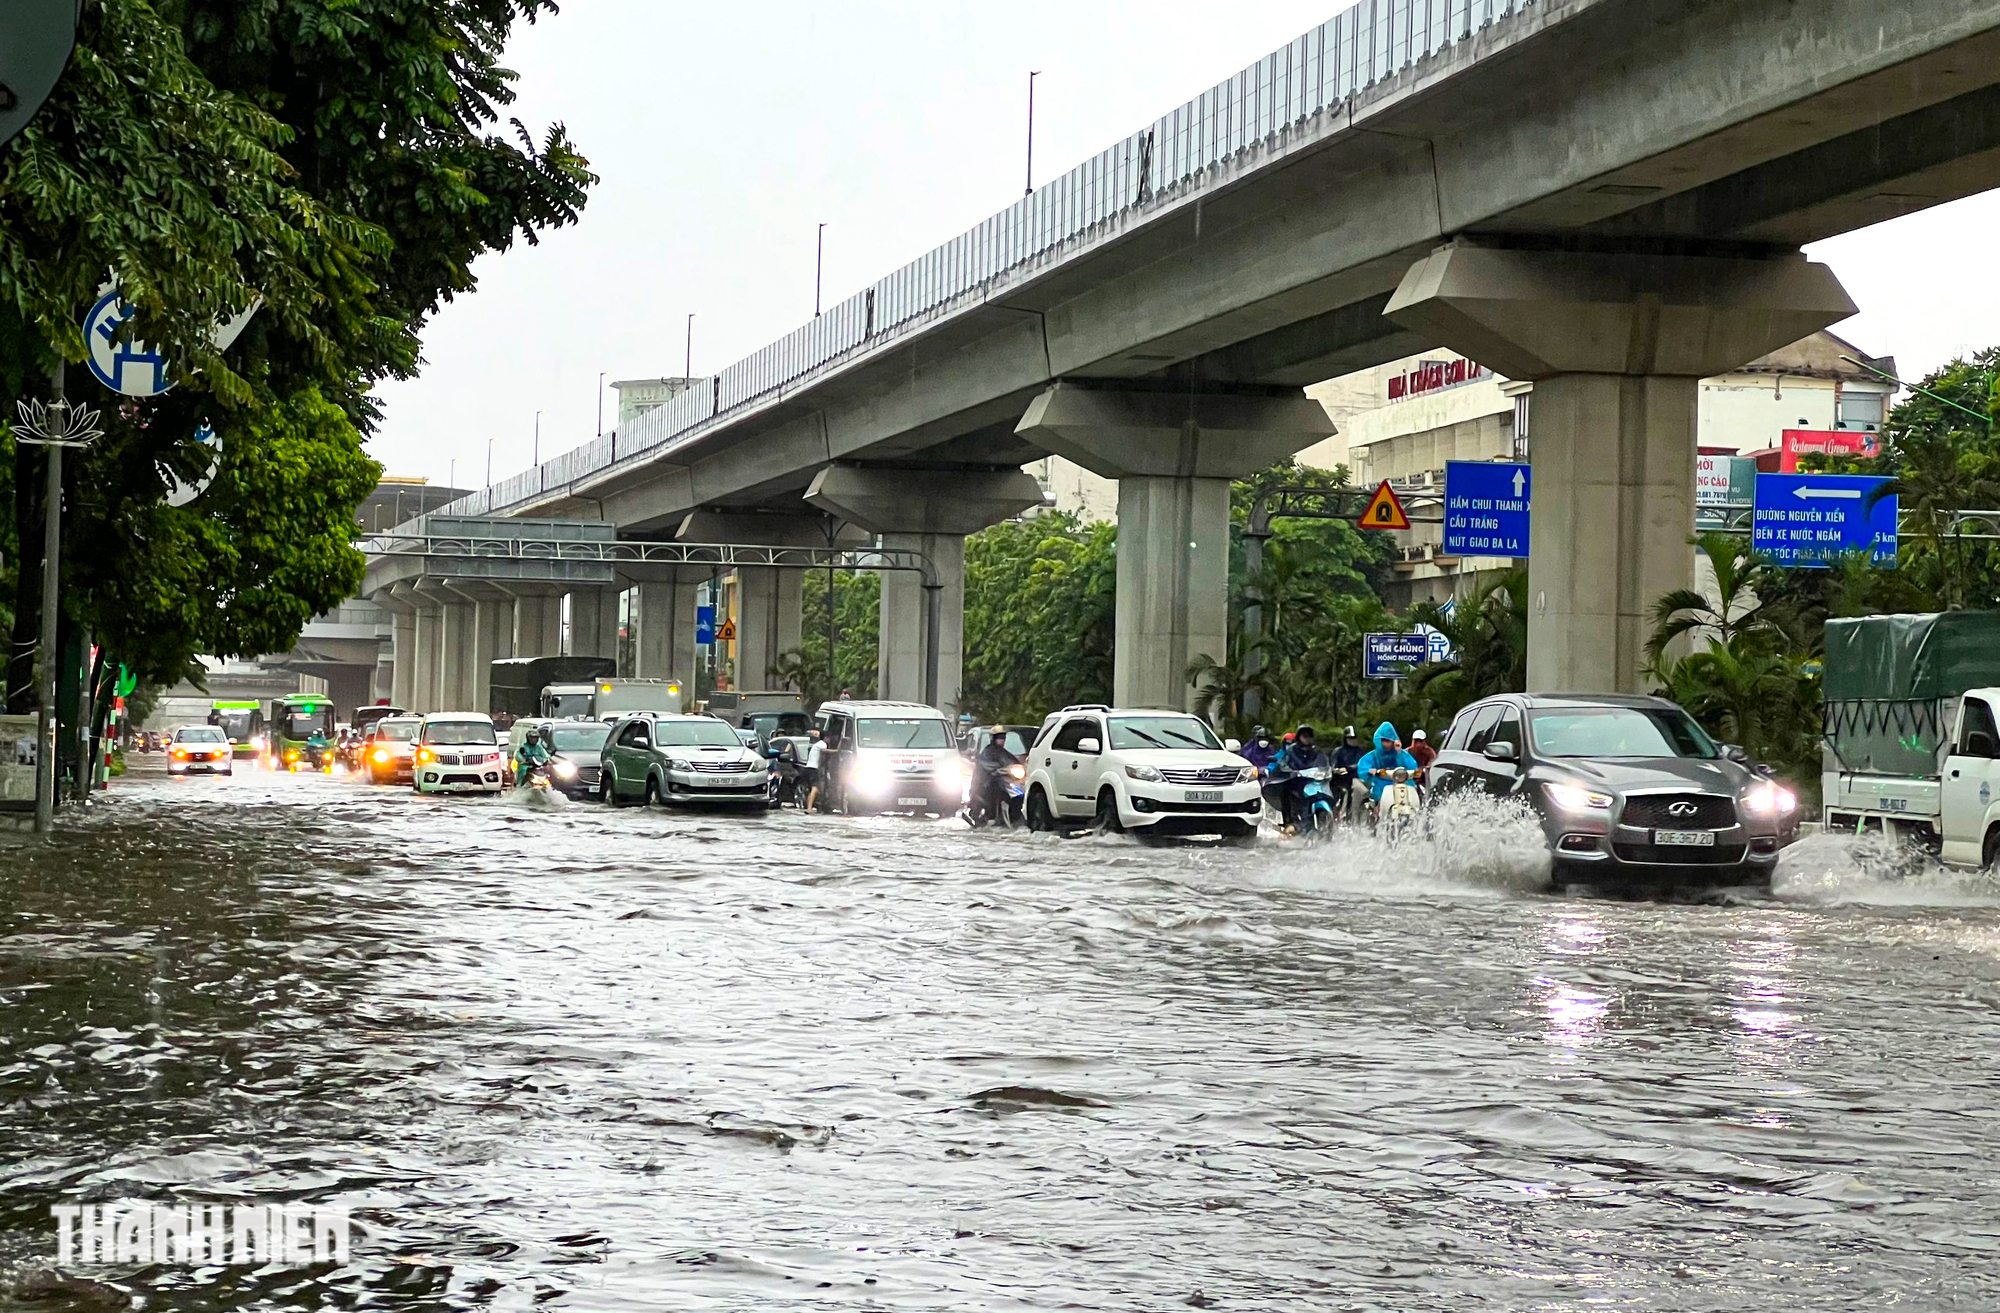 Hà Nội 'ngập như sông' sau mưa lớn, người dân khổ sở nhích từng mét trên đường - Ảnh 1.